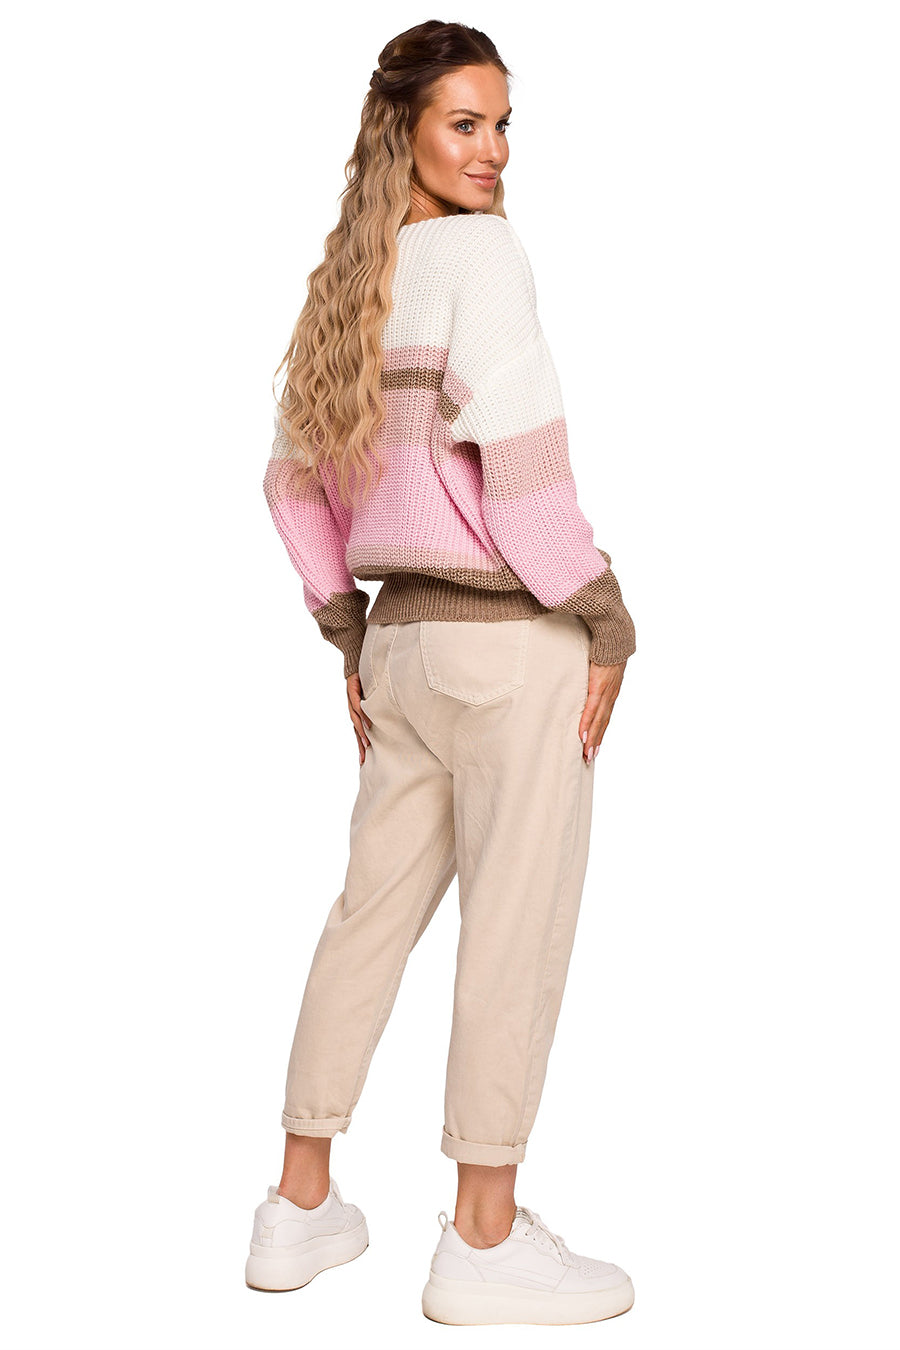 Γυναικείο πουλόβερ Aithne, Λευκό/Ροζ 2